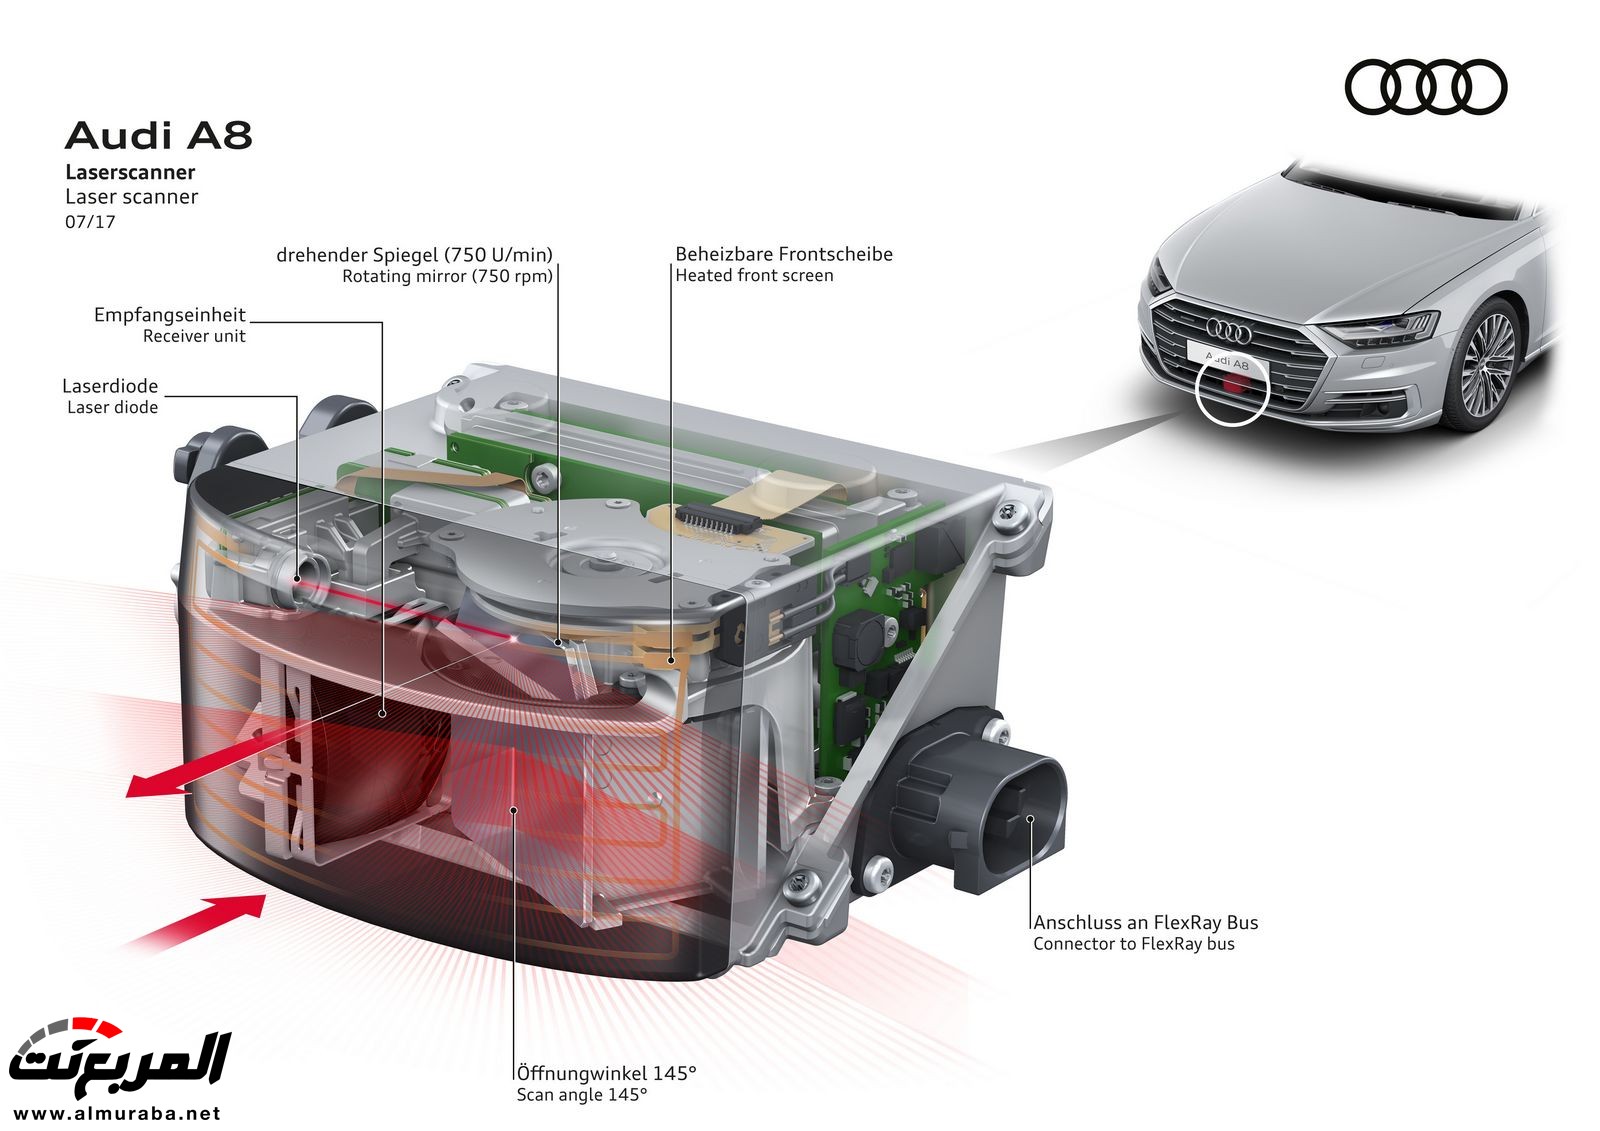 أودي A8 2018 الجديدة كلياً تكشف نفسها بتصميم وتقنيات متطورة "معلومات + 100 صورة" Audi A8 75